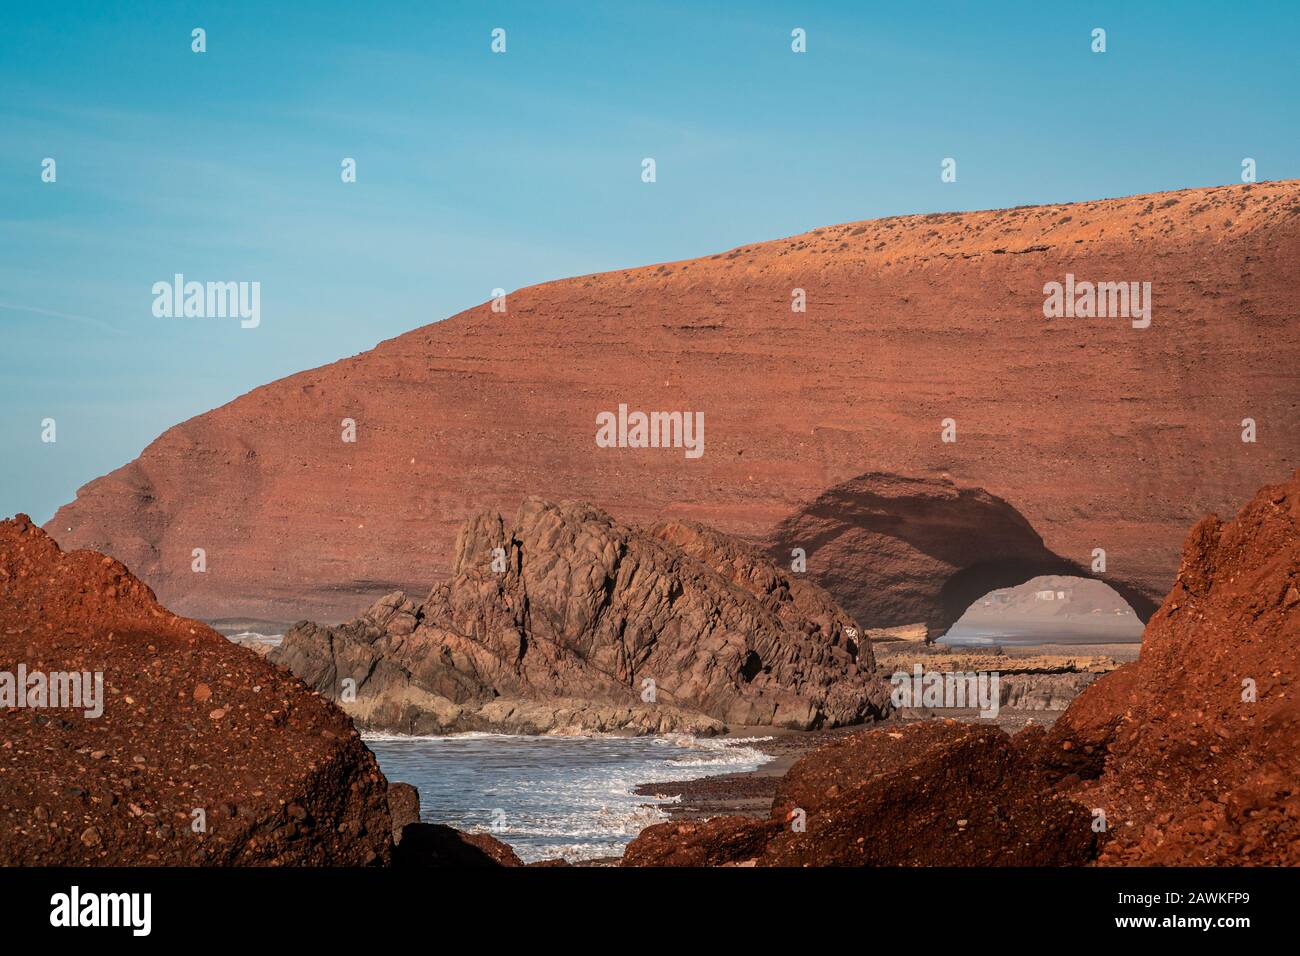 Arche de pierre panoramique sur la côte atlantique, Maroc Banque D'Images